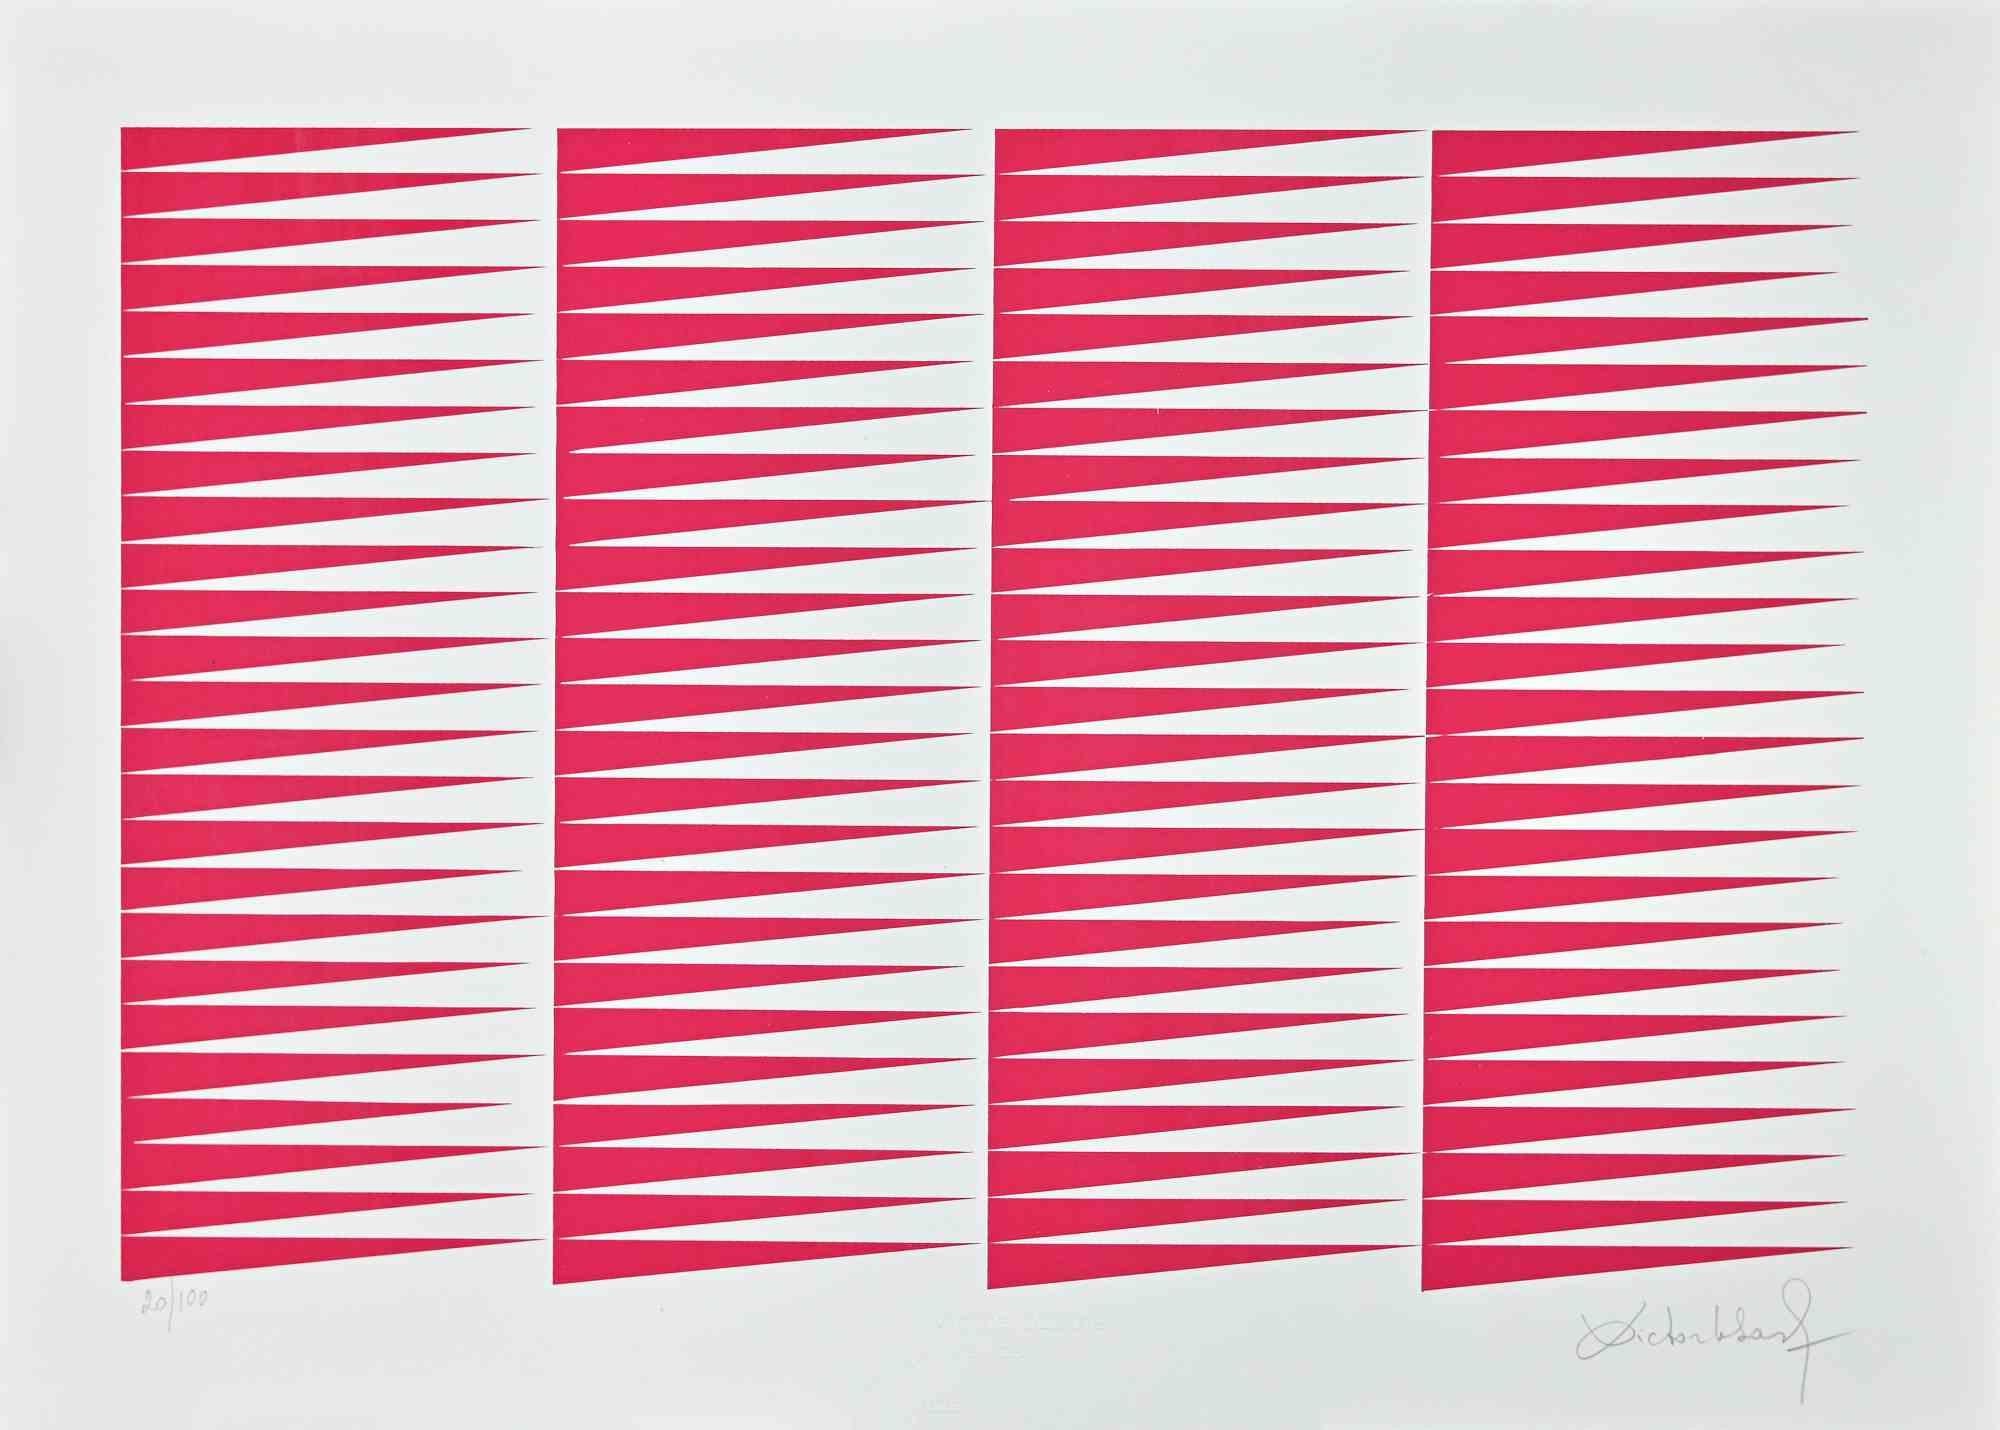 Fuchsine Composition ist ein Siebdruck von Victor Debach aus den 1970er Jahren.

Handsigniert und nummeriert. Auflage: 100 Exemplare.

Guter Zustand.